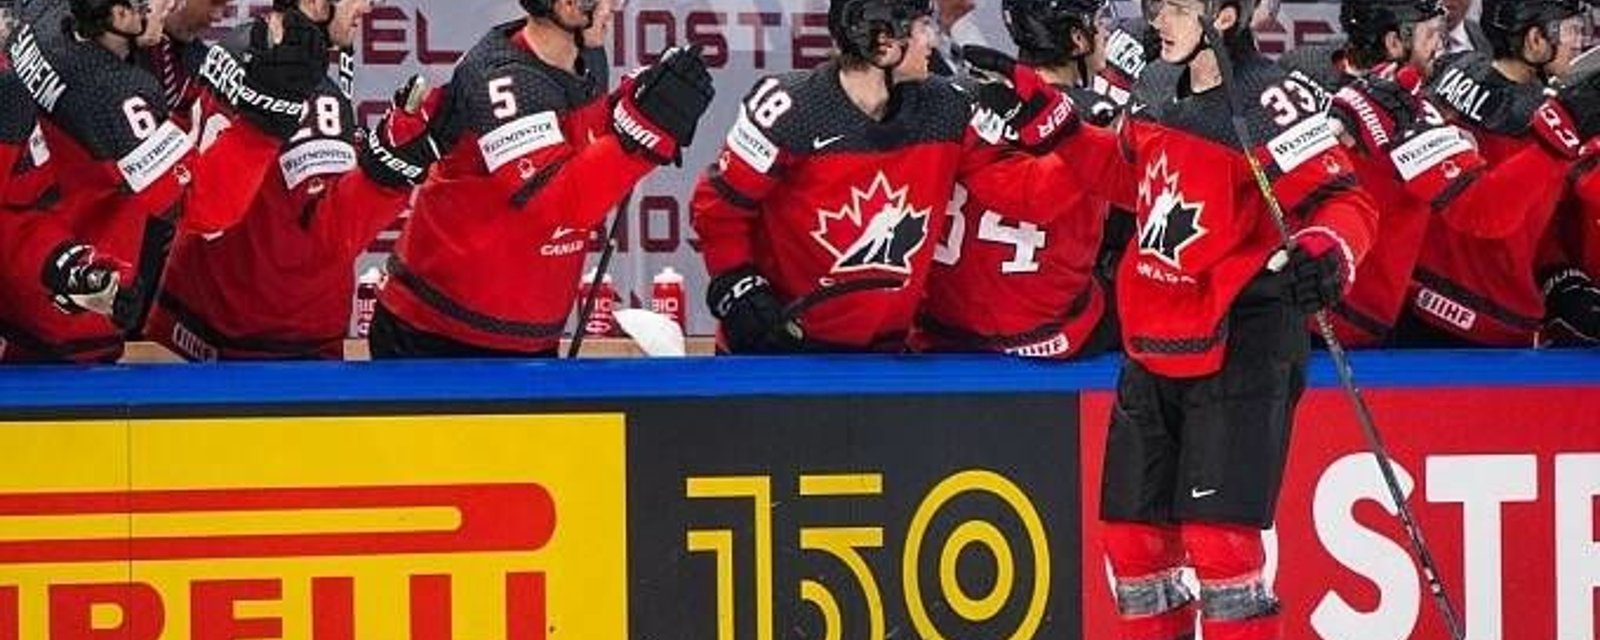 Le Canada passe en finale!